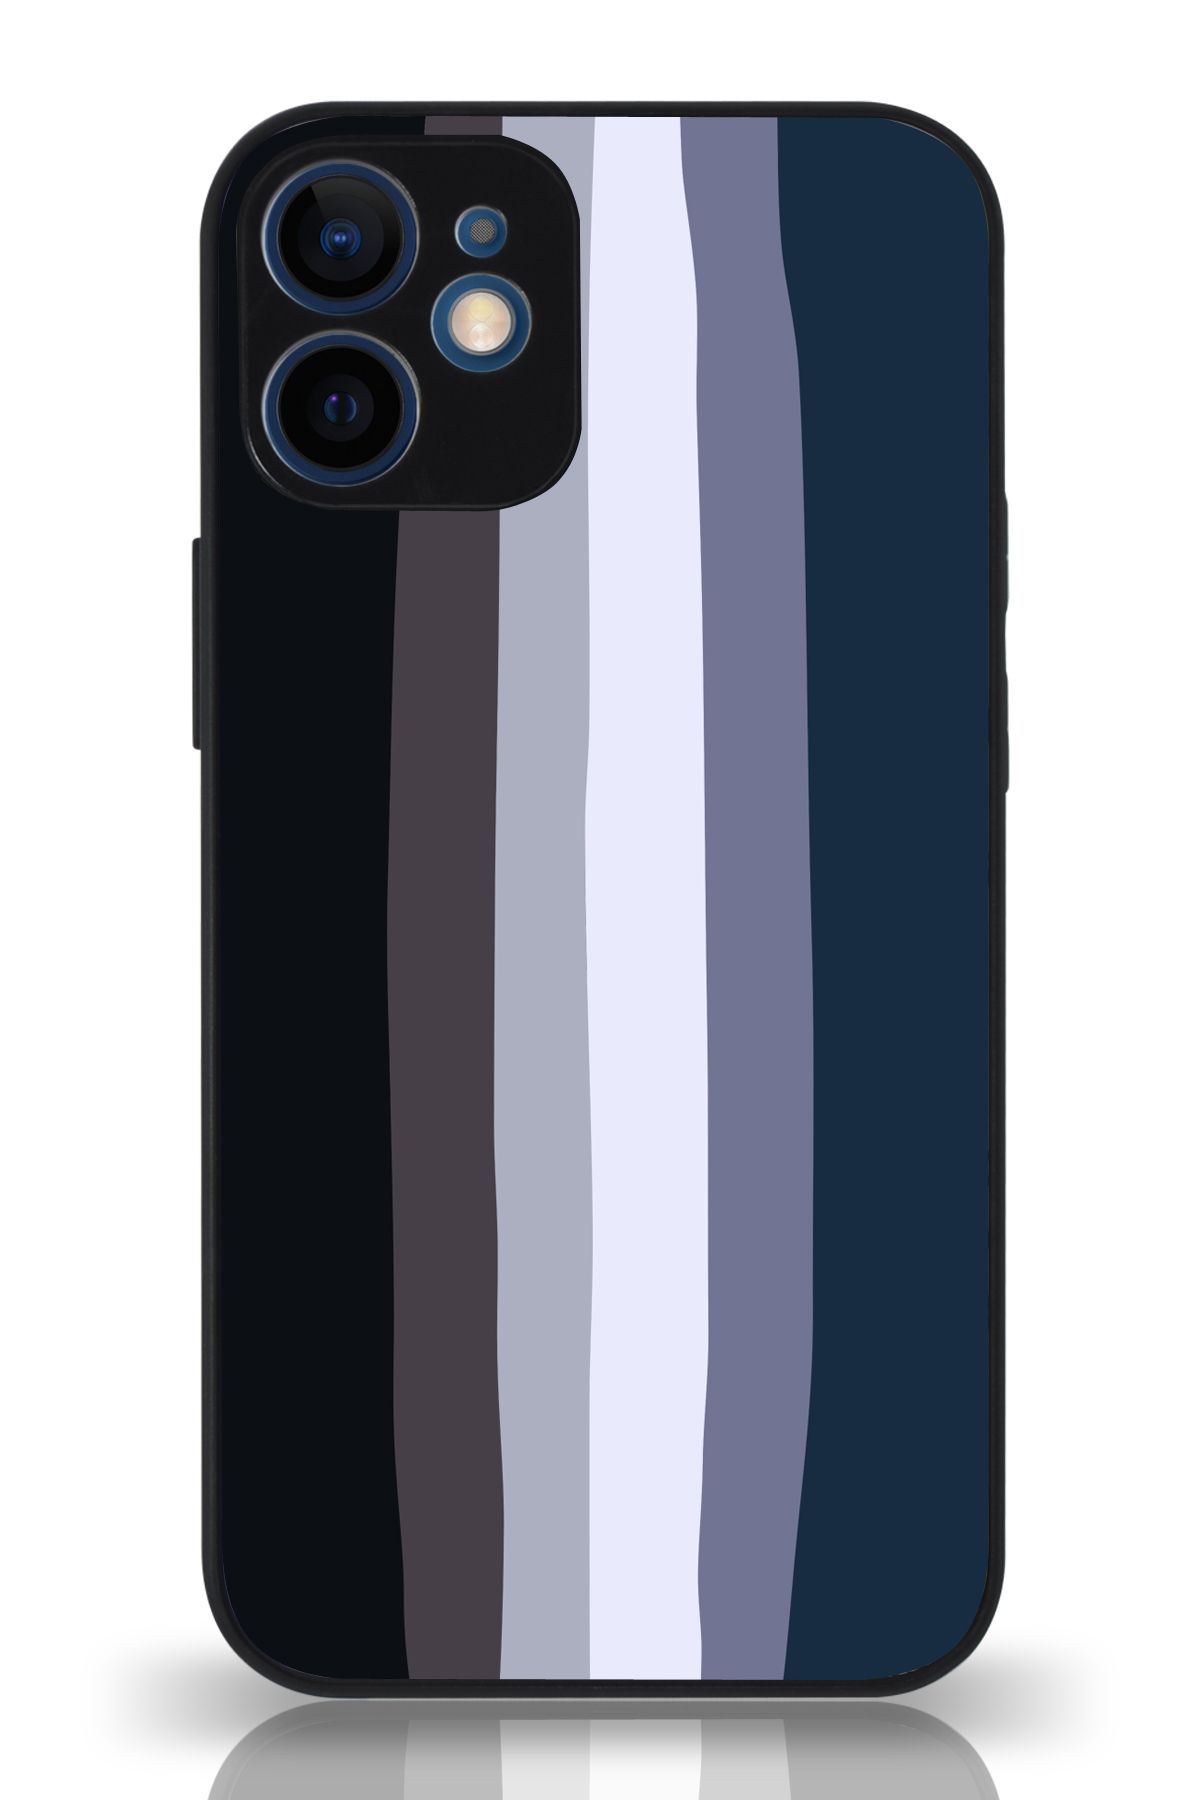 PrintiFy Apple iPhone 12 Mini Kamera Korumalı Mavi Gökkuşağı Desenli Cam Kapak Siyah